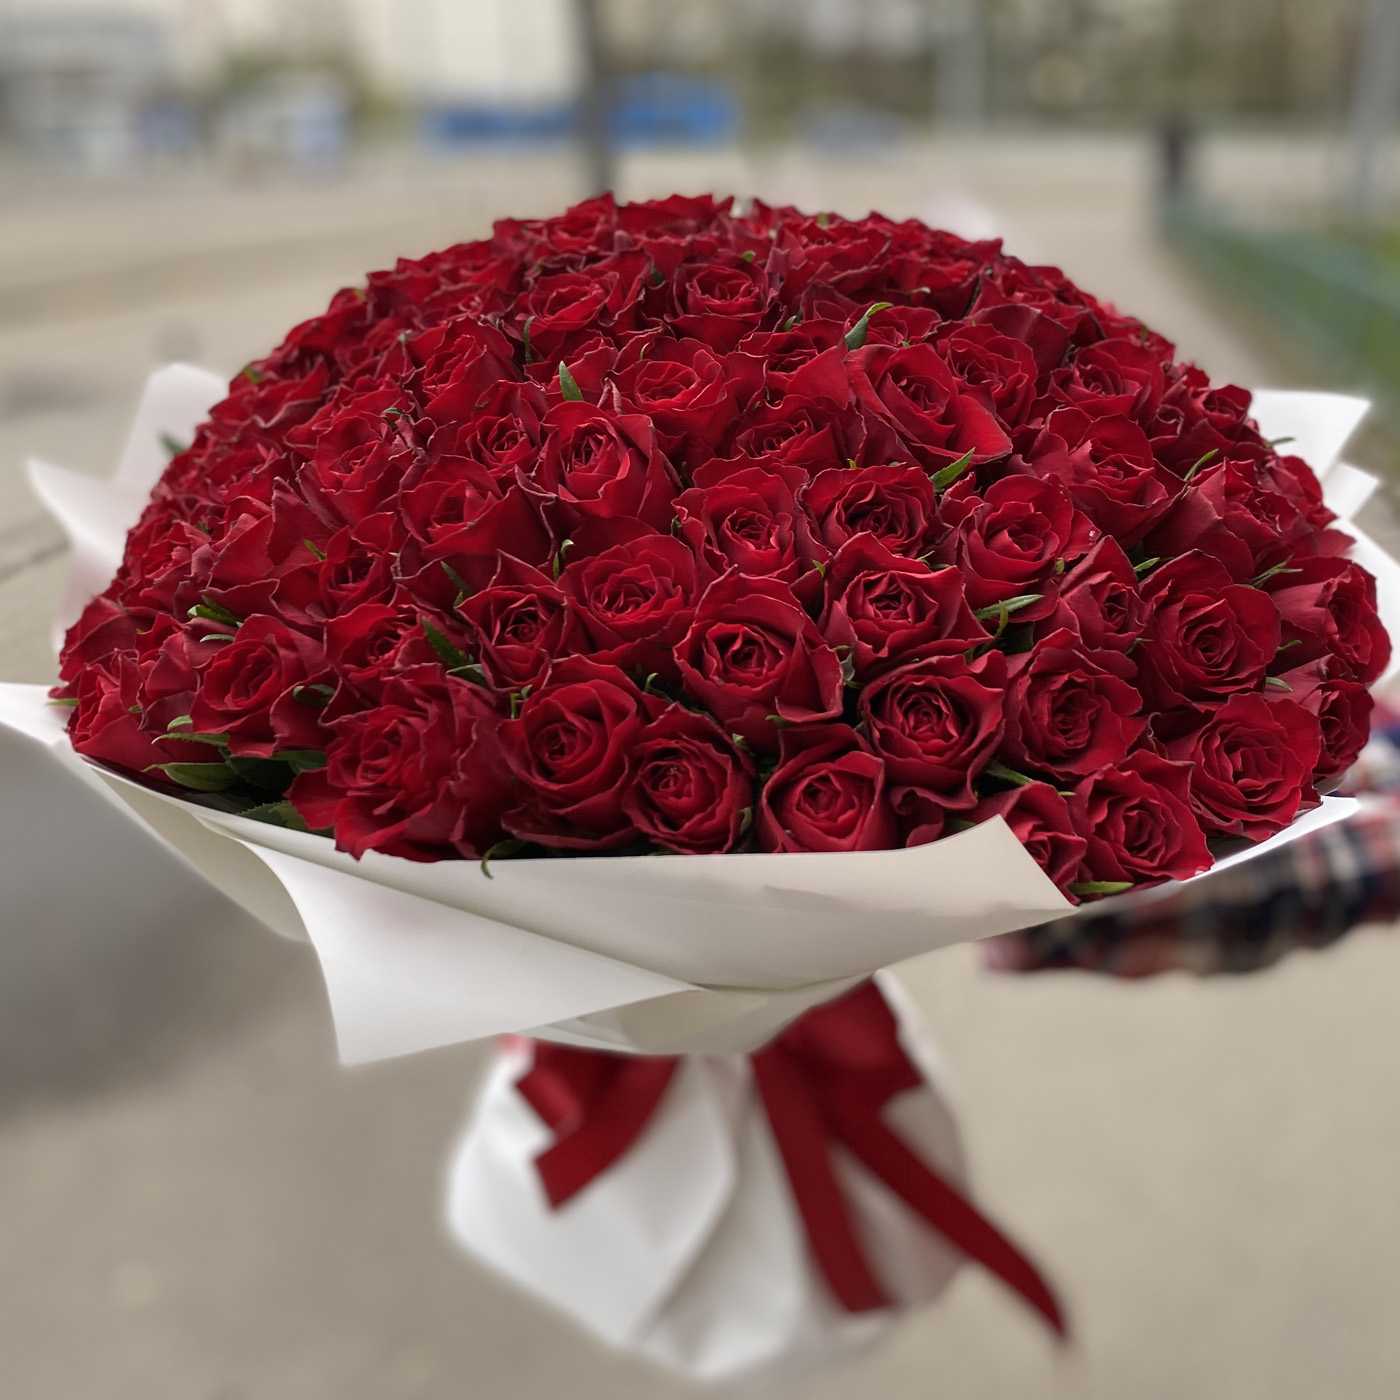 цветы 101 роза дешево в москве